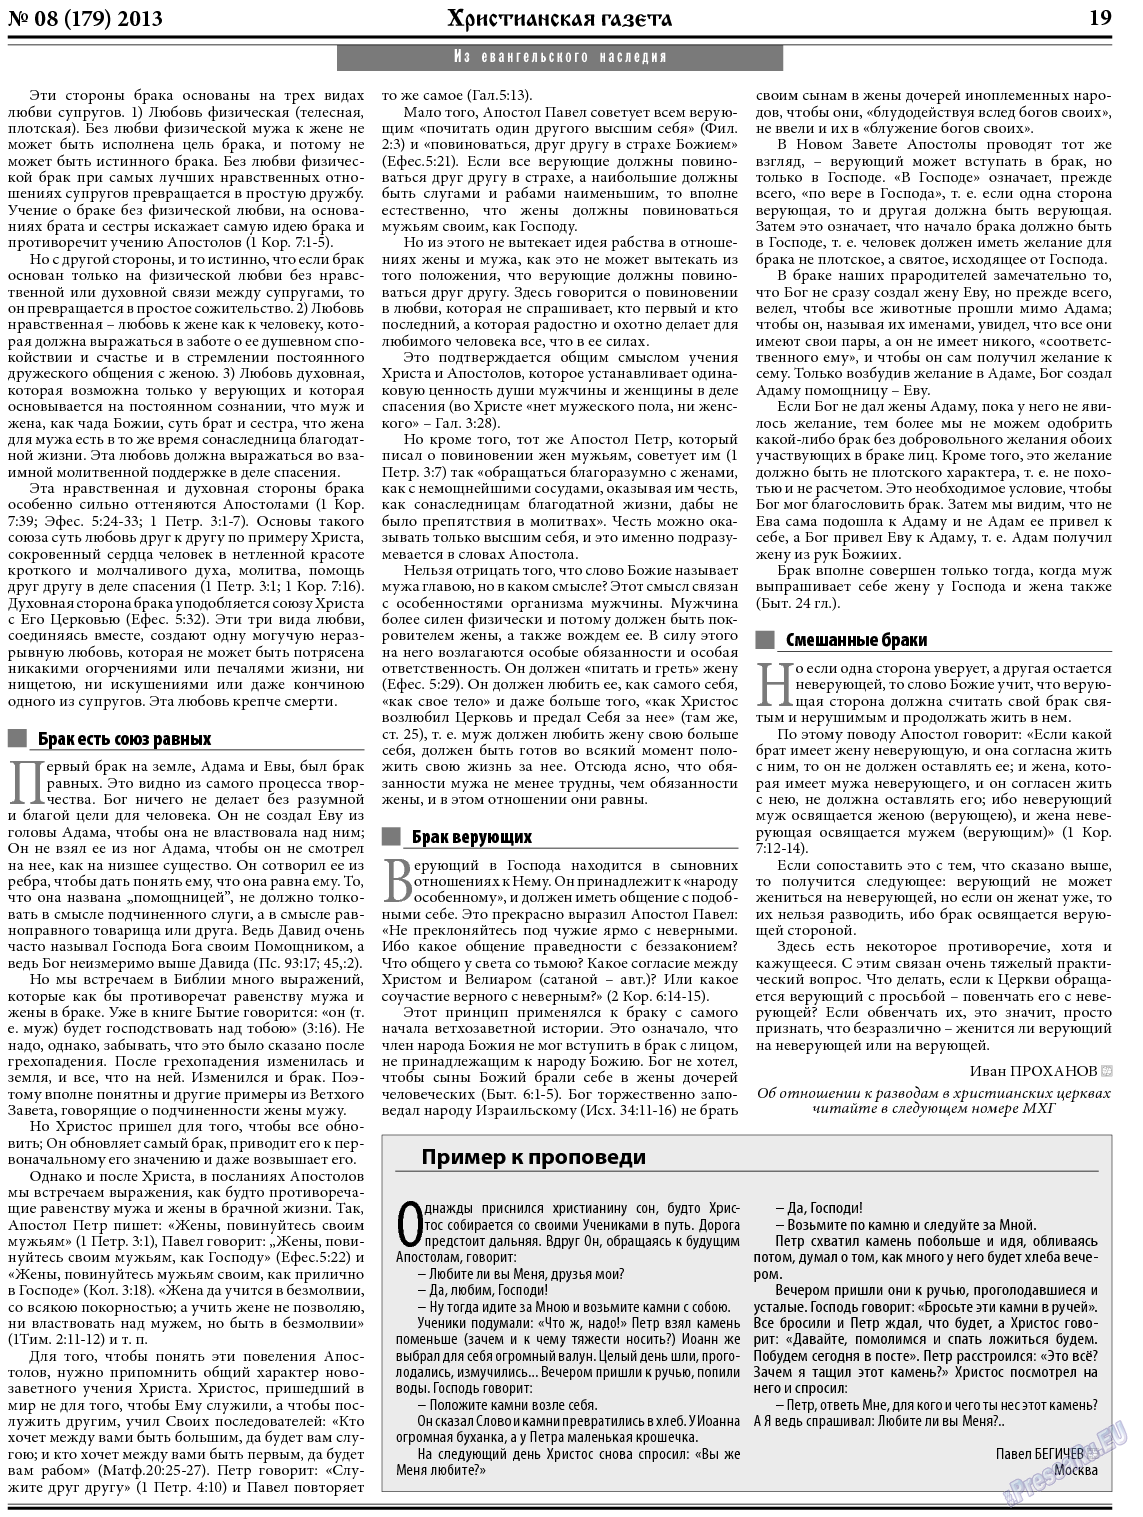 Христианская газета, газета. 2013 №8 стр.27